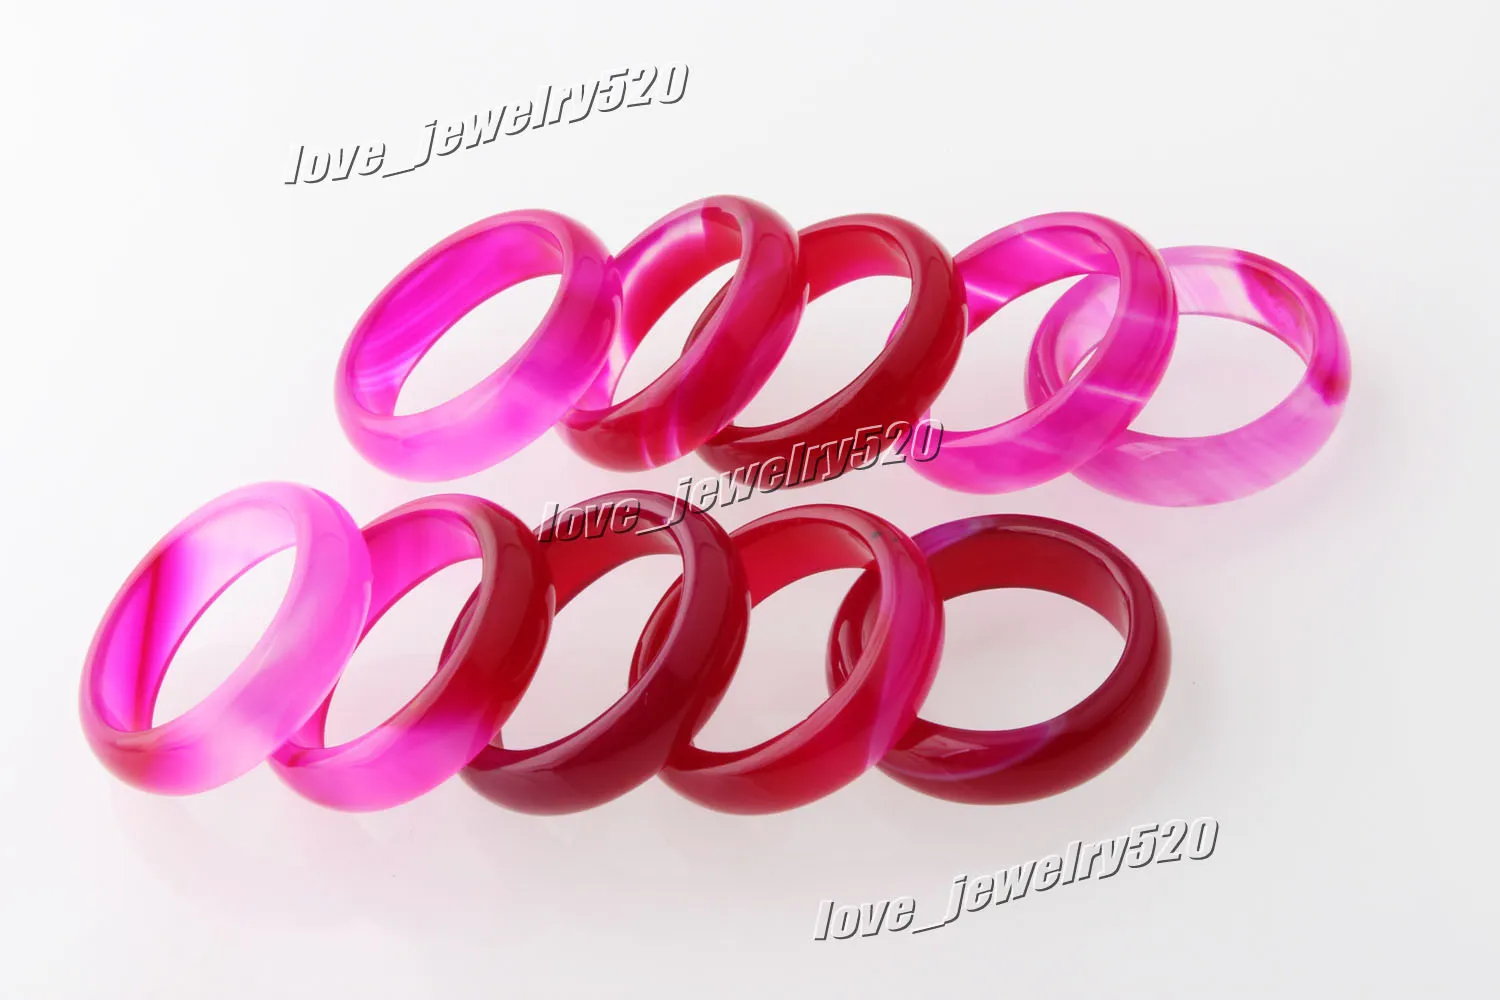 Neue schöne glatte Roseo runde massive Jade/Achat-Edelstein-Bandringe 6 mm – tolles Preis-Leistungs-Verhältnis, 20 Stück